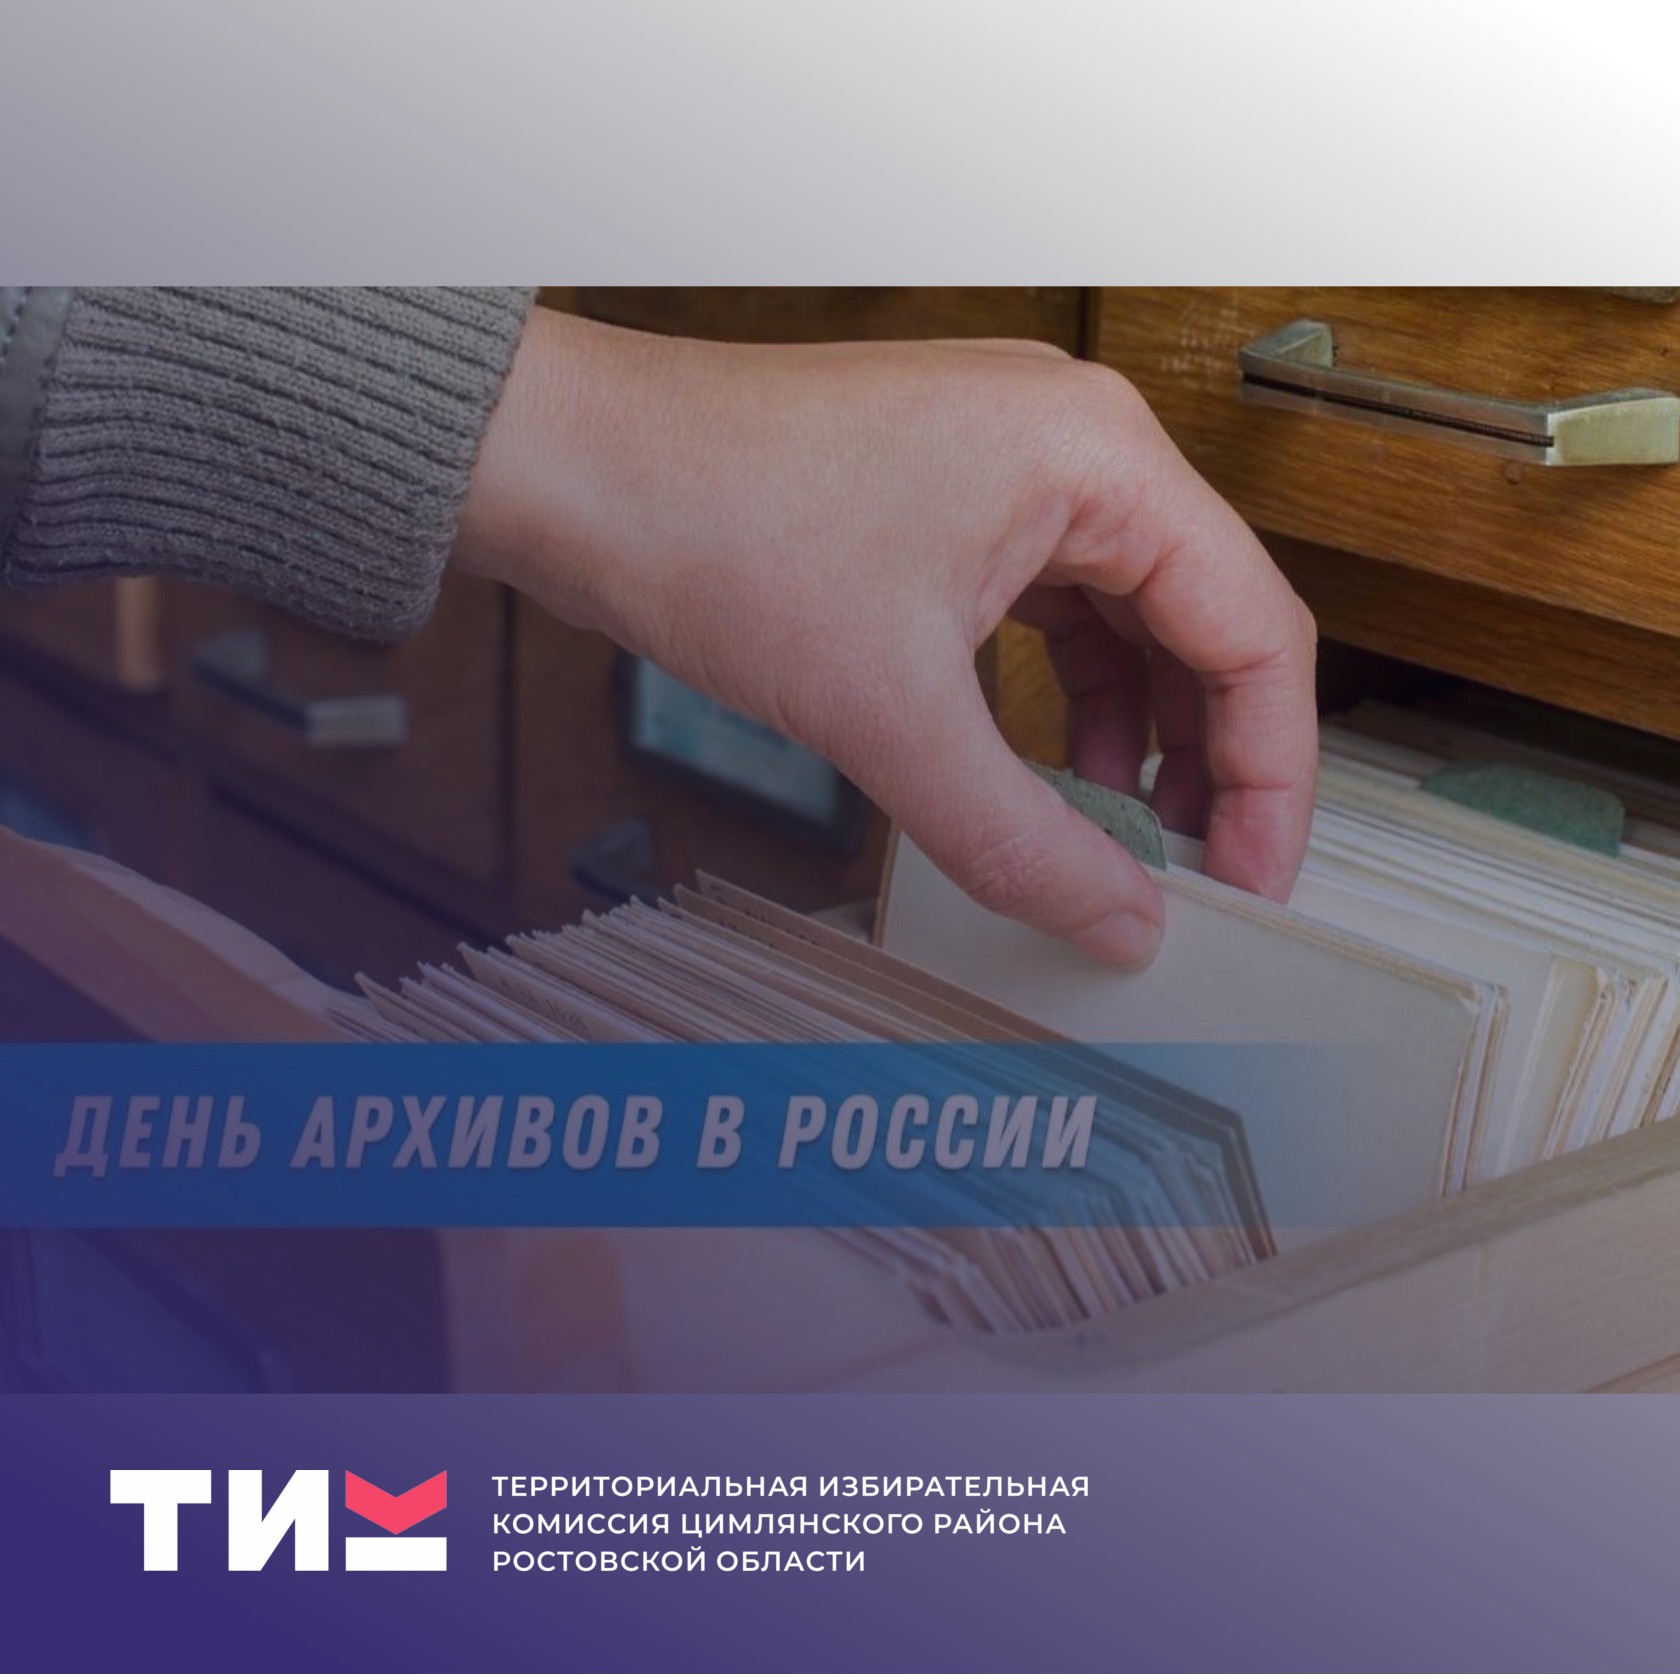 10 марта – День архивов в России